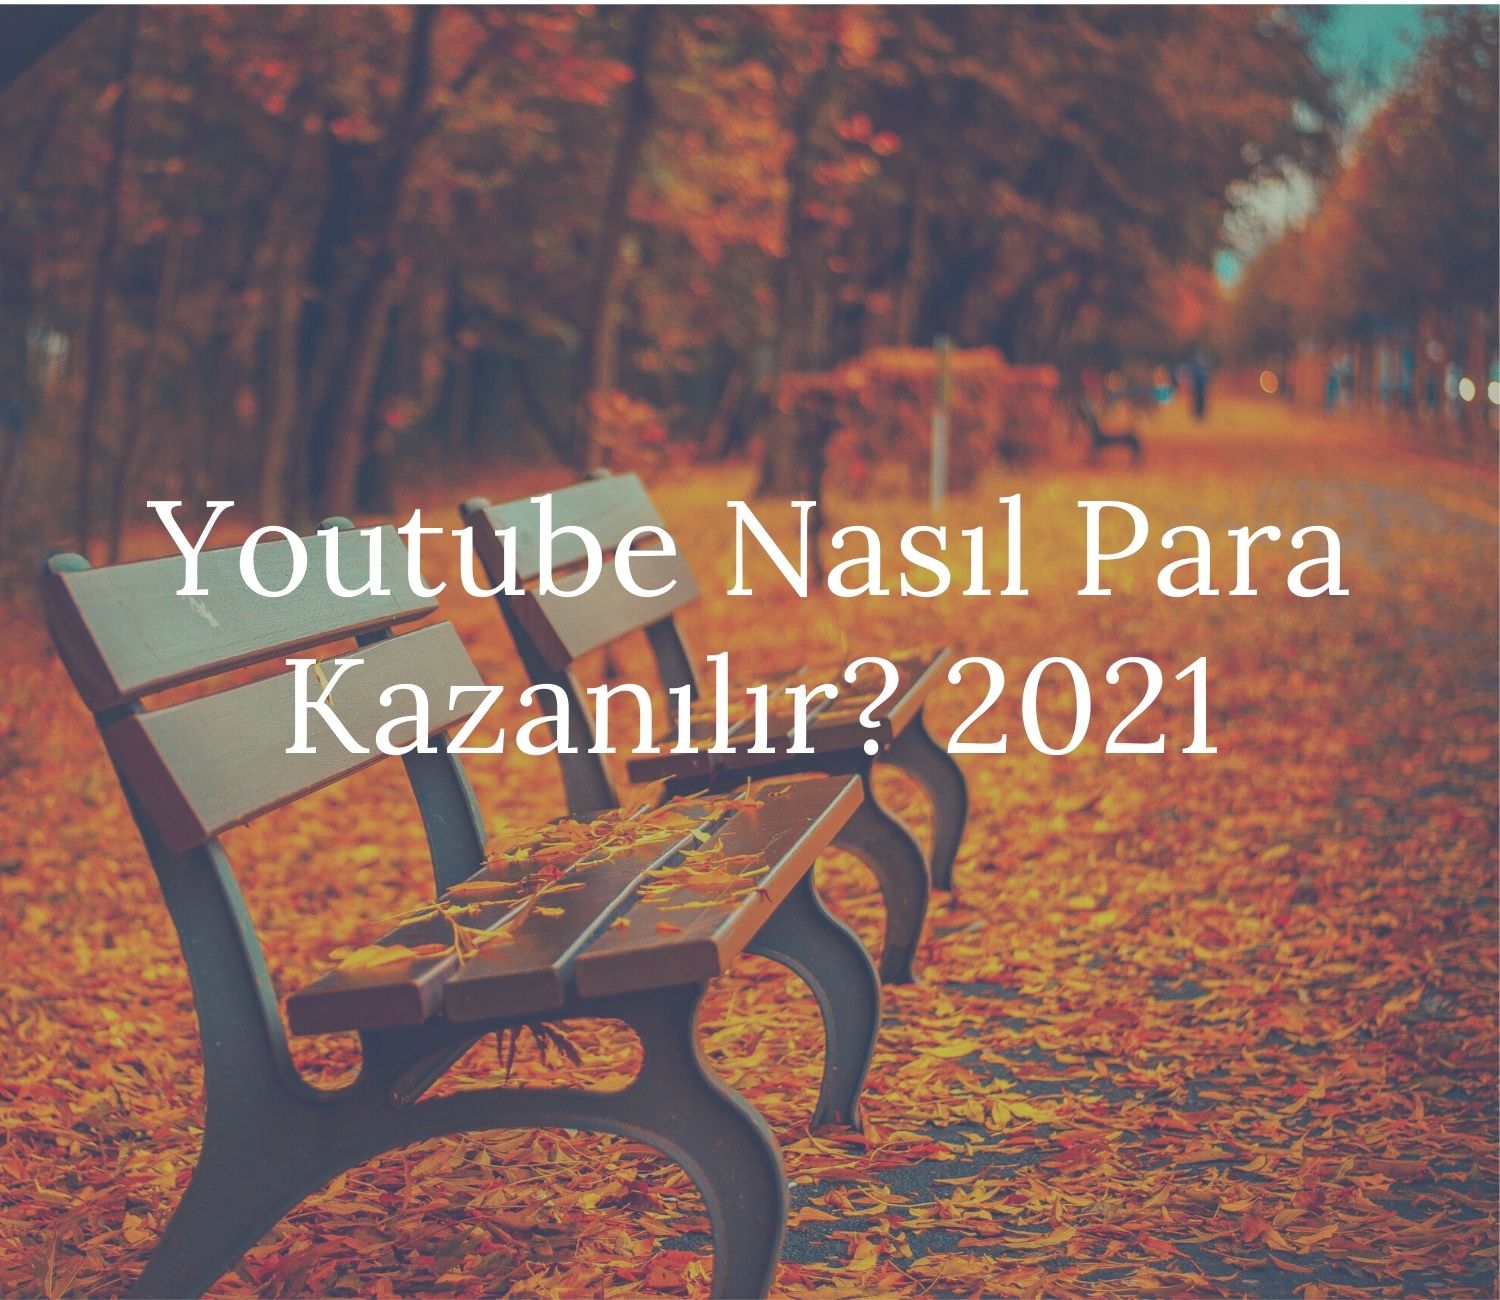 Youtube Nasıl Para Kazanılır? 2023 Yöntemleri